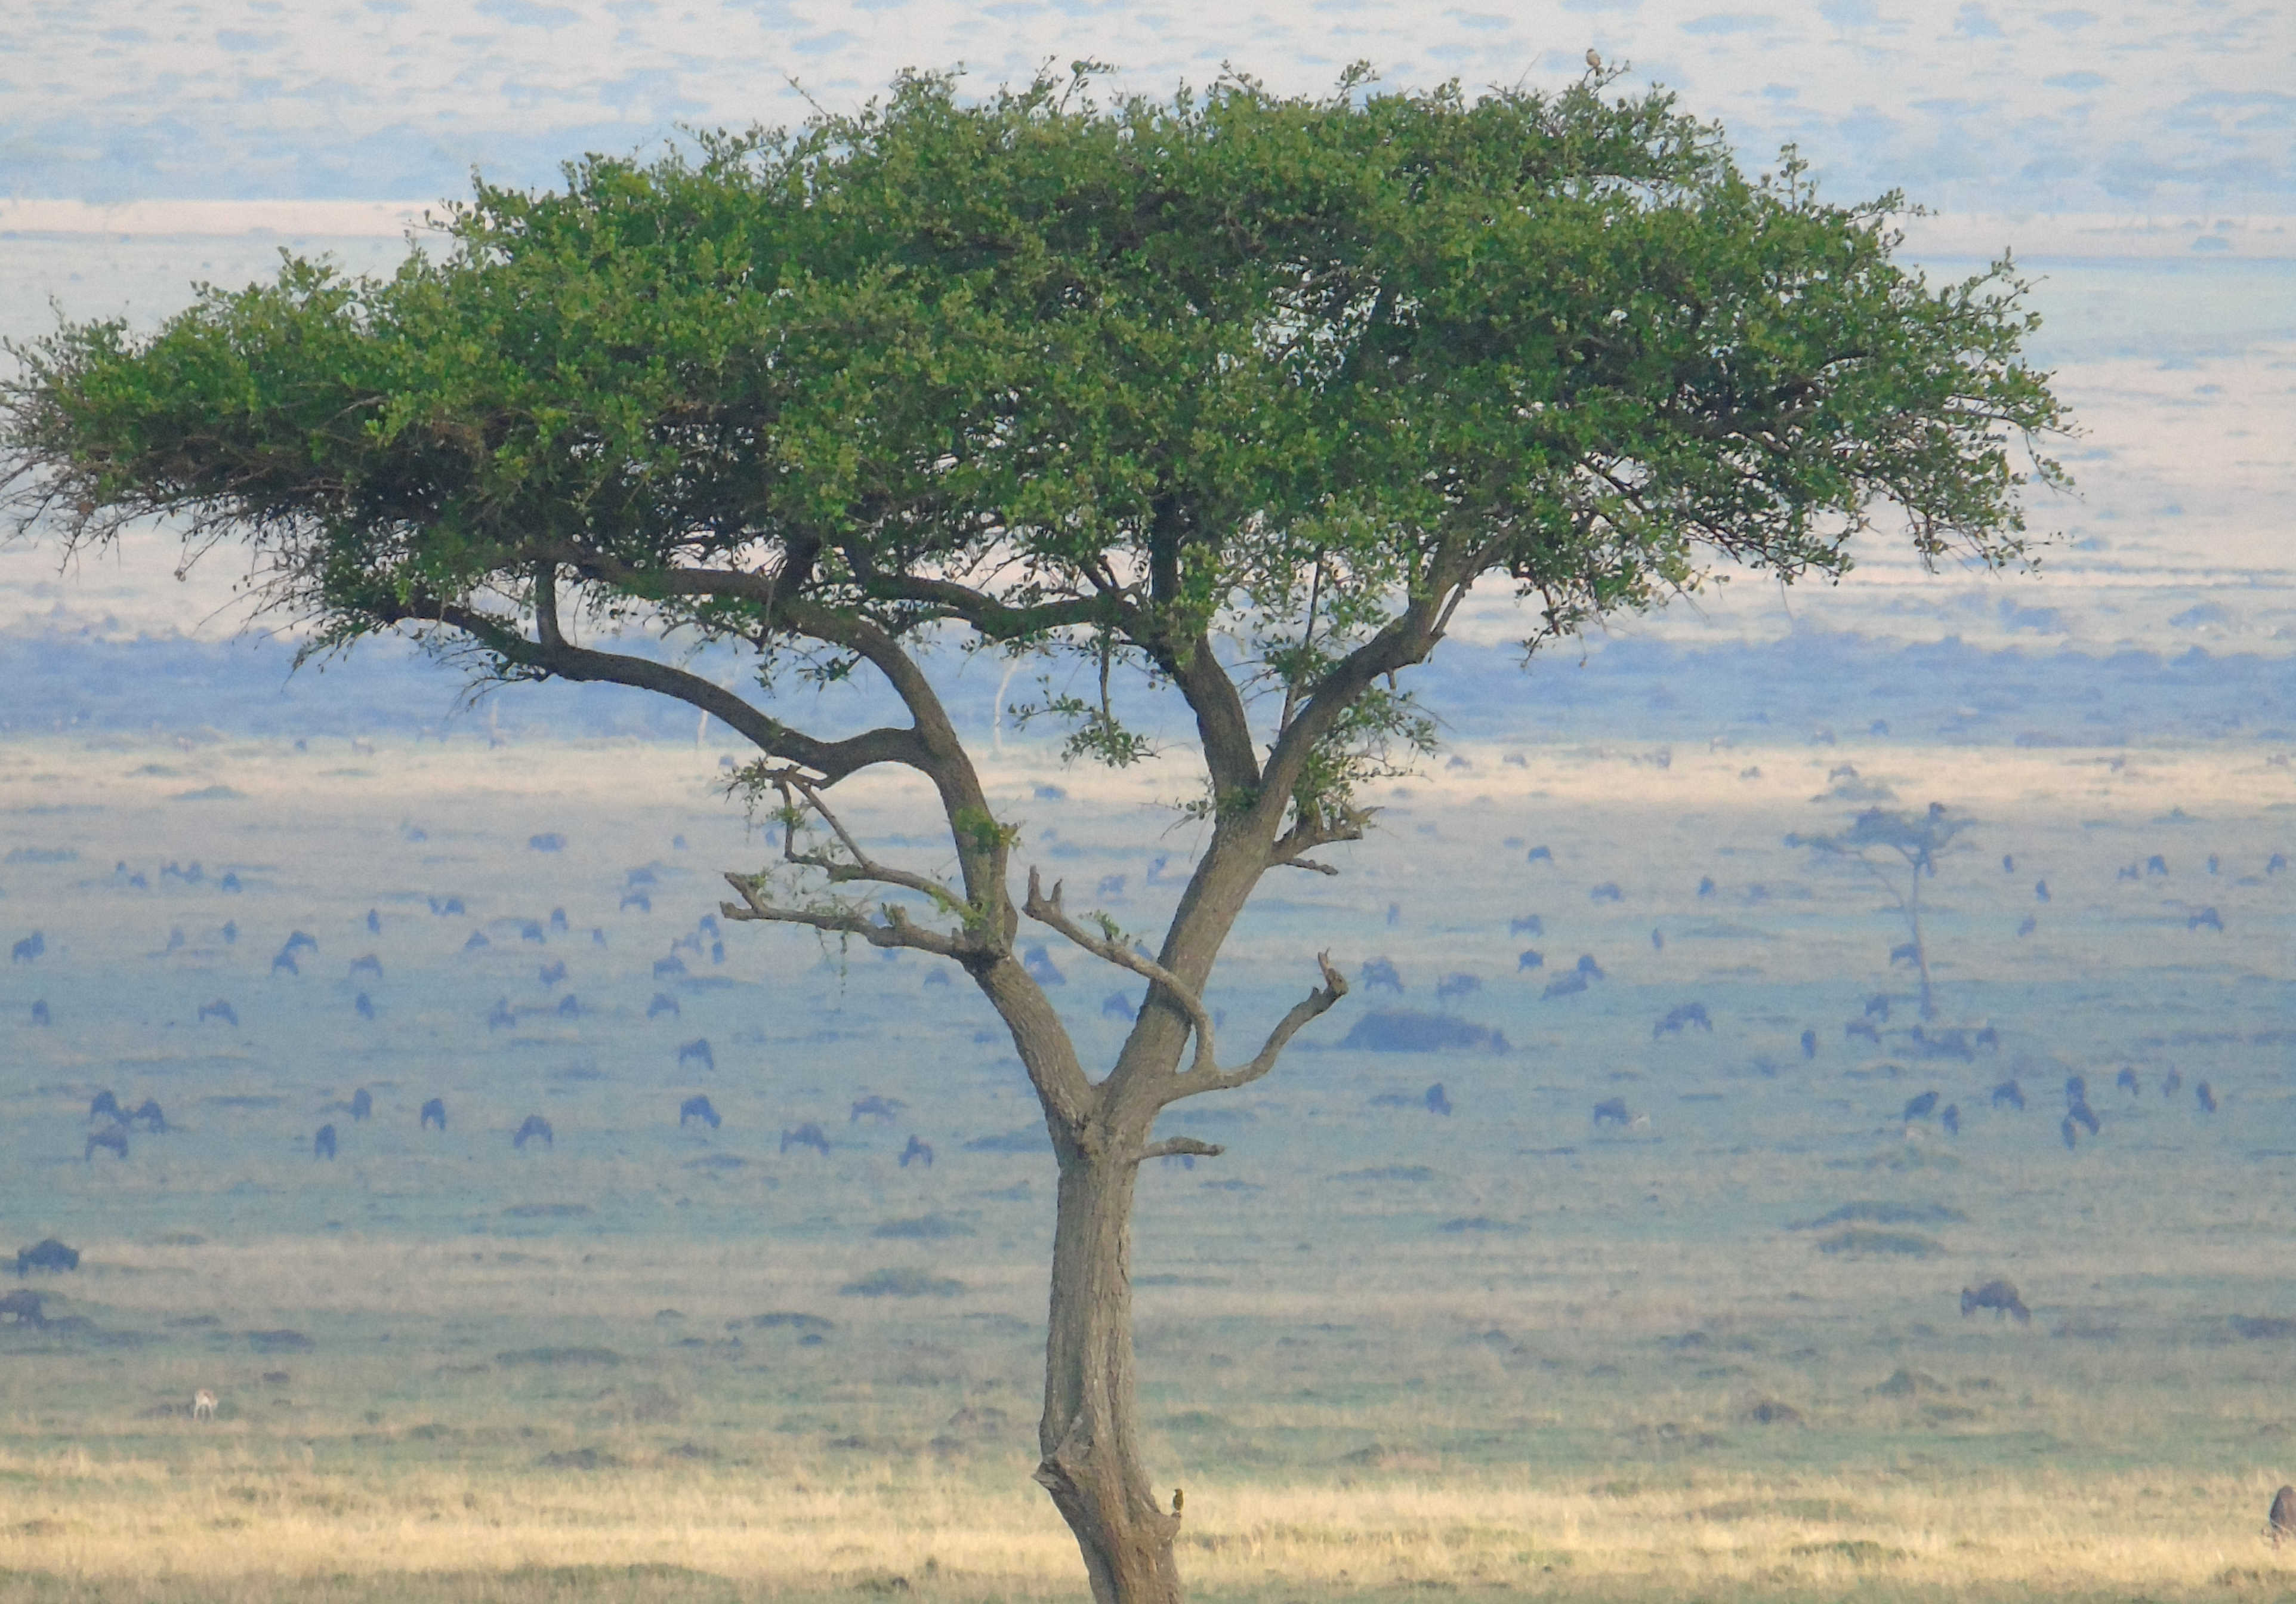 Acacia au Kenya